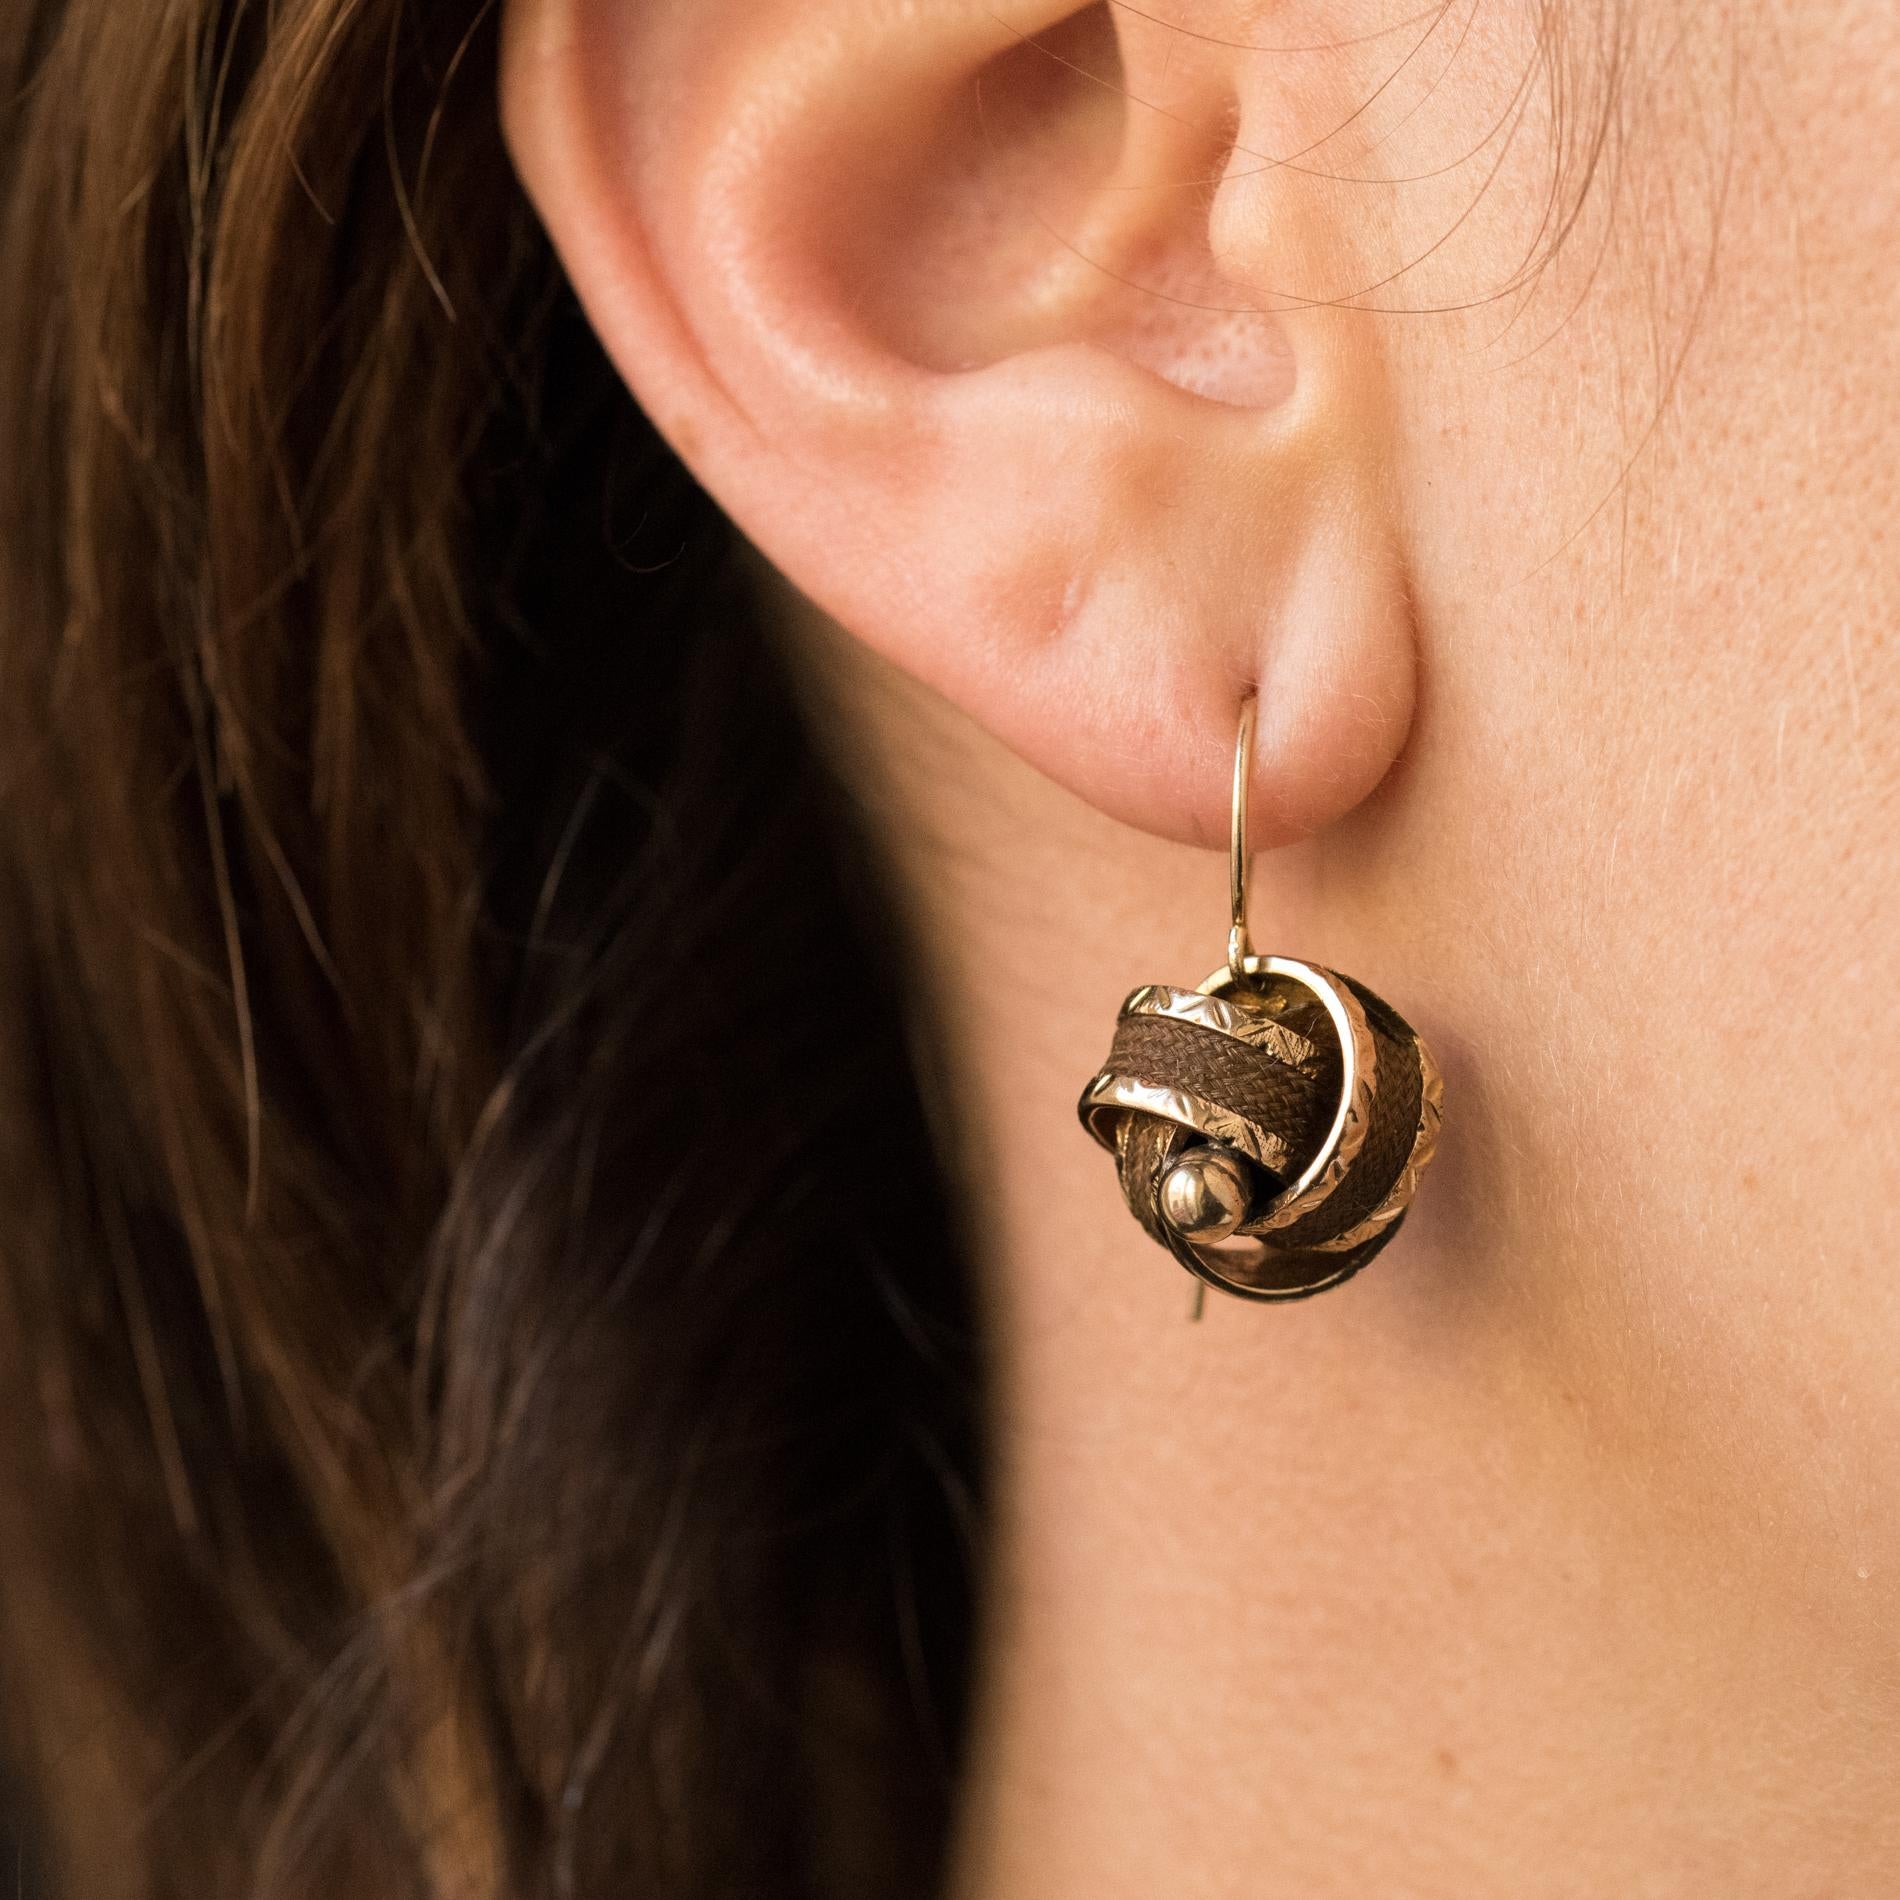 Ohrringe aus 14 Karat Gelbgold.
Jeder Ohrring besteht aus einer goldenen Schleife, in die ein Docht aus geflochtenem braunem Haar eingeflochten ist, und ist mit einer goldenen Perle besetzt. Das Befestigungssystem ist ein Schwanenhals.
Höhe: 2,4 cm,